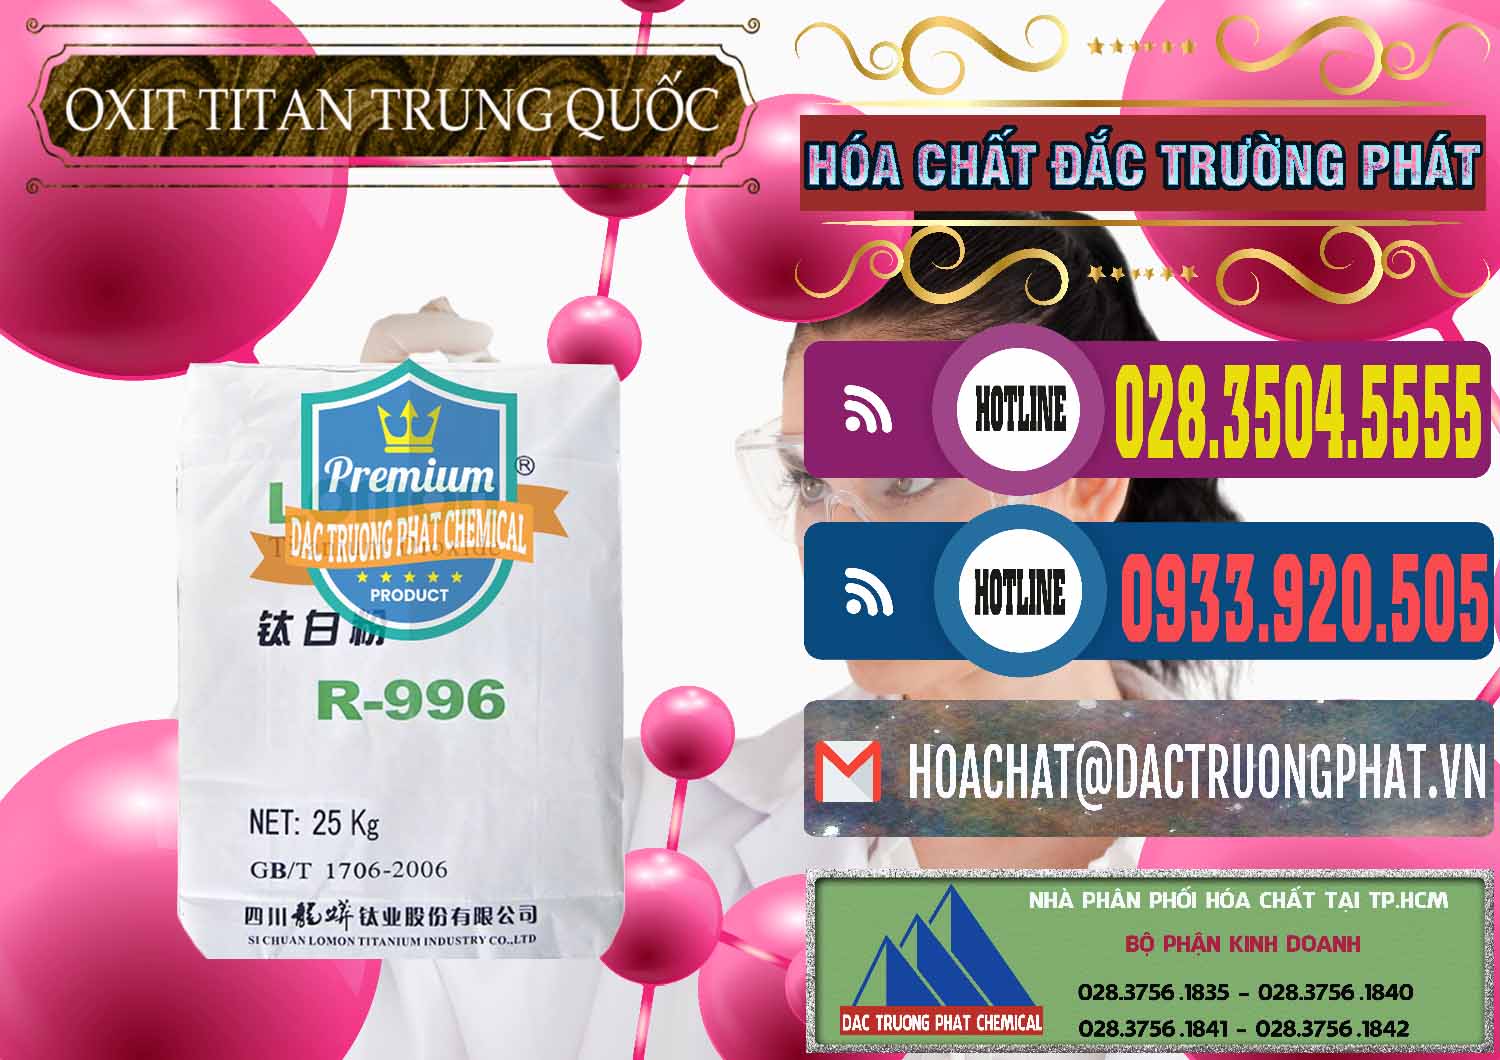 Nơi chuyên bán ( cung cấp ) Oxit Titan KA100 – Tio2 Trung Quốc China - 0398 - Công ty kinh doanh ( cung cấp ) hóa chất tại TP.HCM - muabanhoachat.com.vn